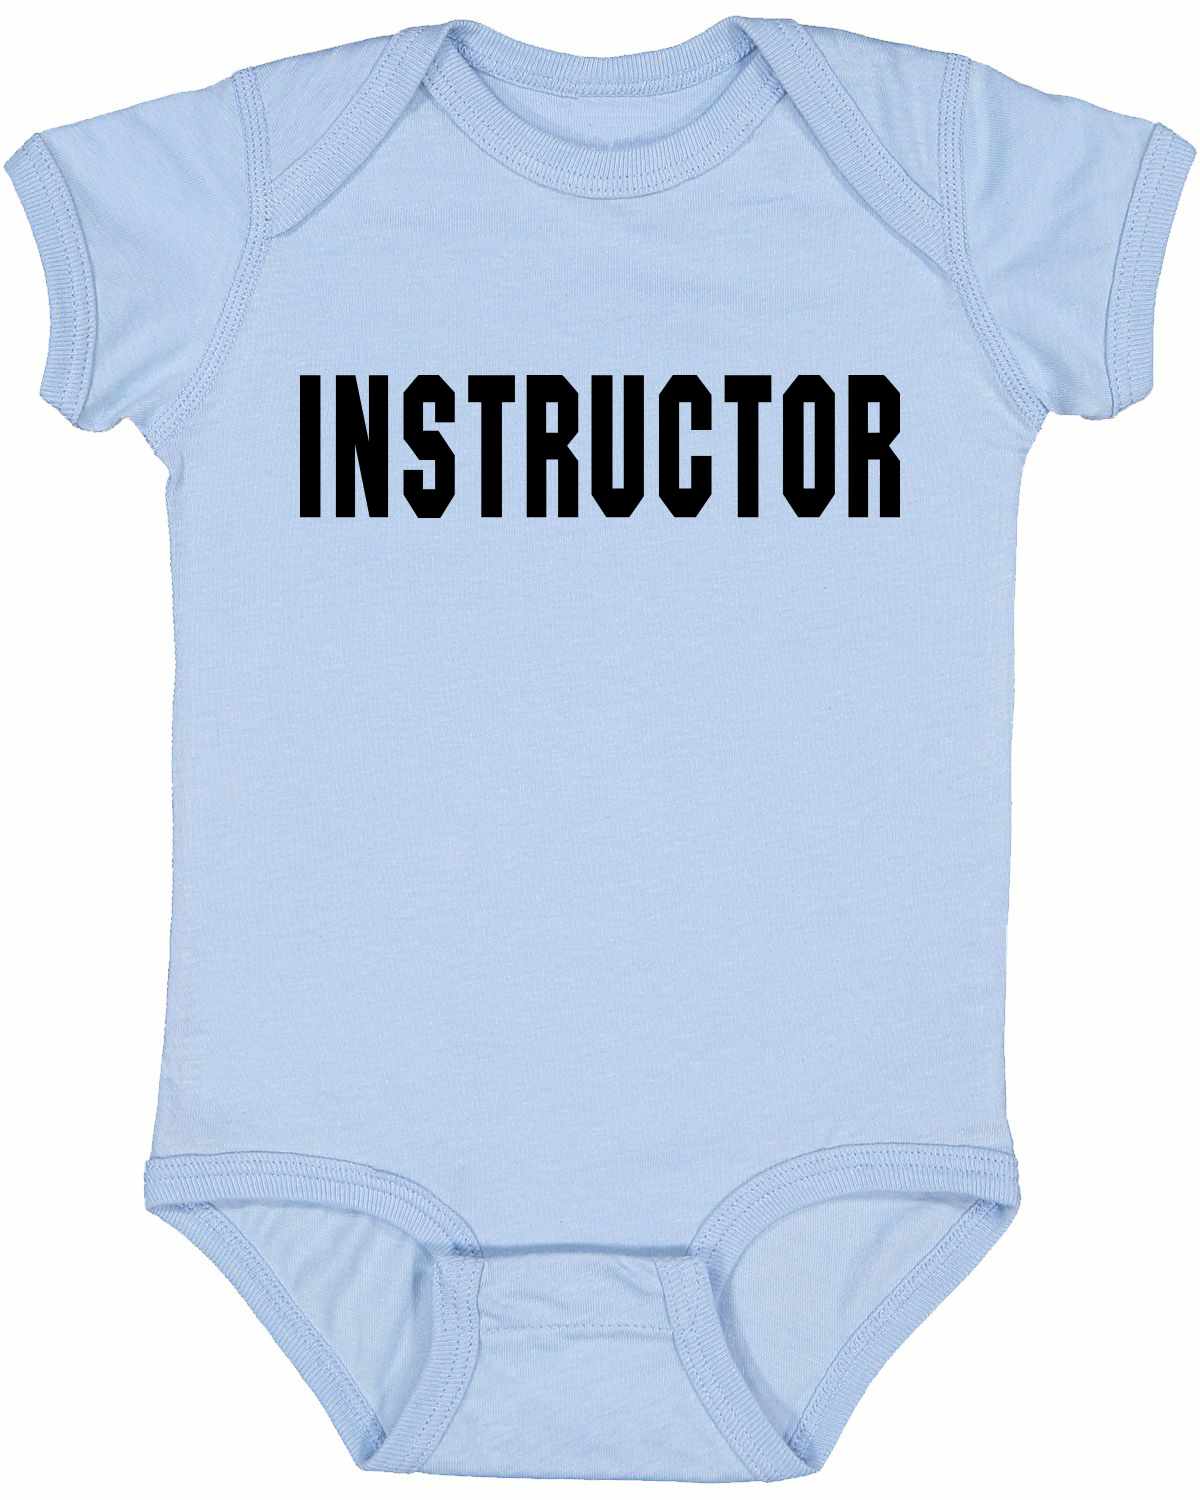 INSTRUCTOR on Infant BodySuit (#242-10)